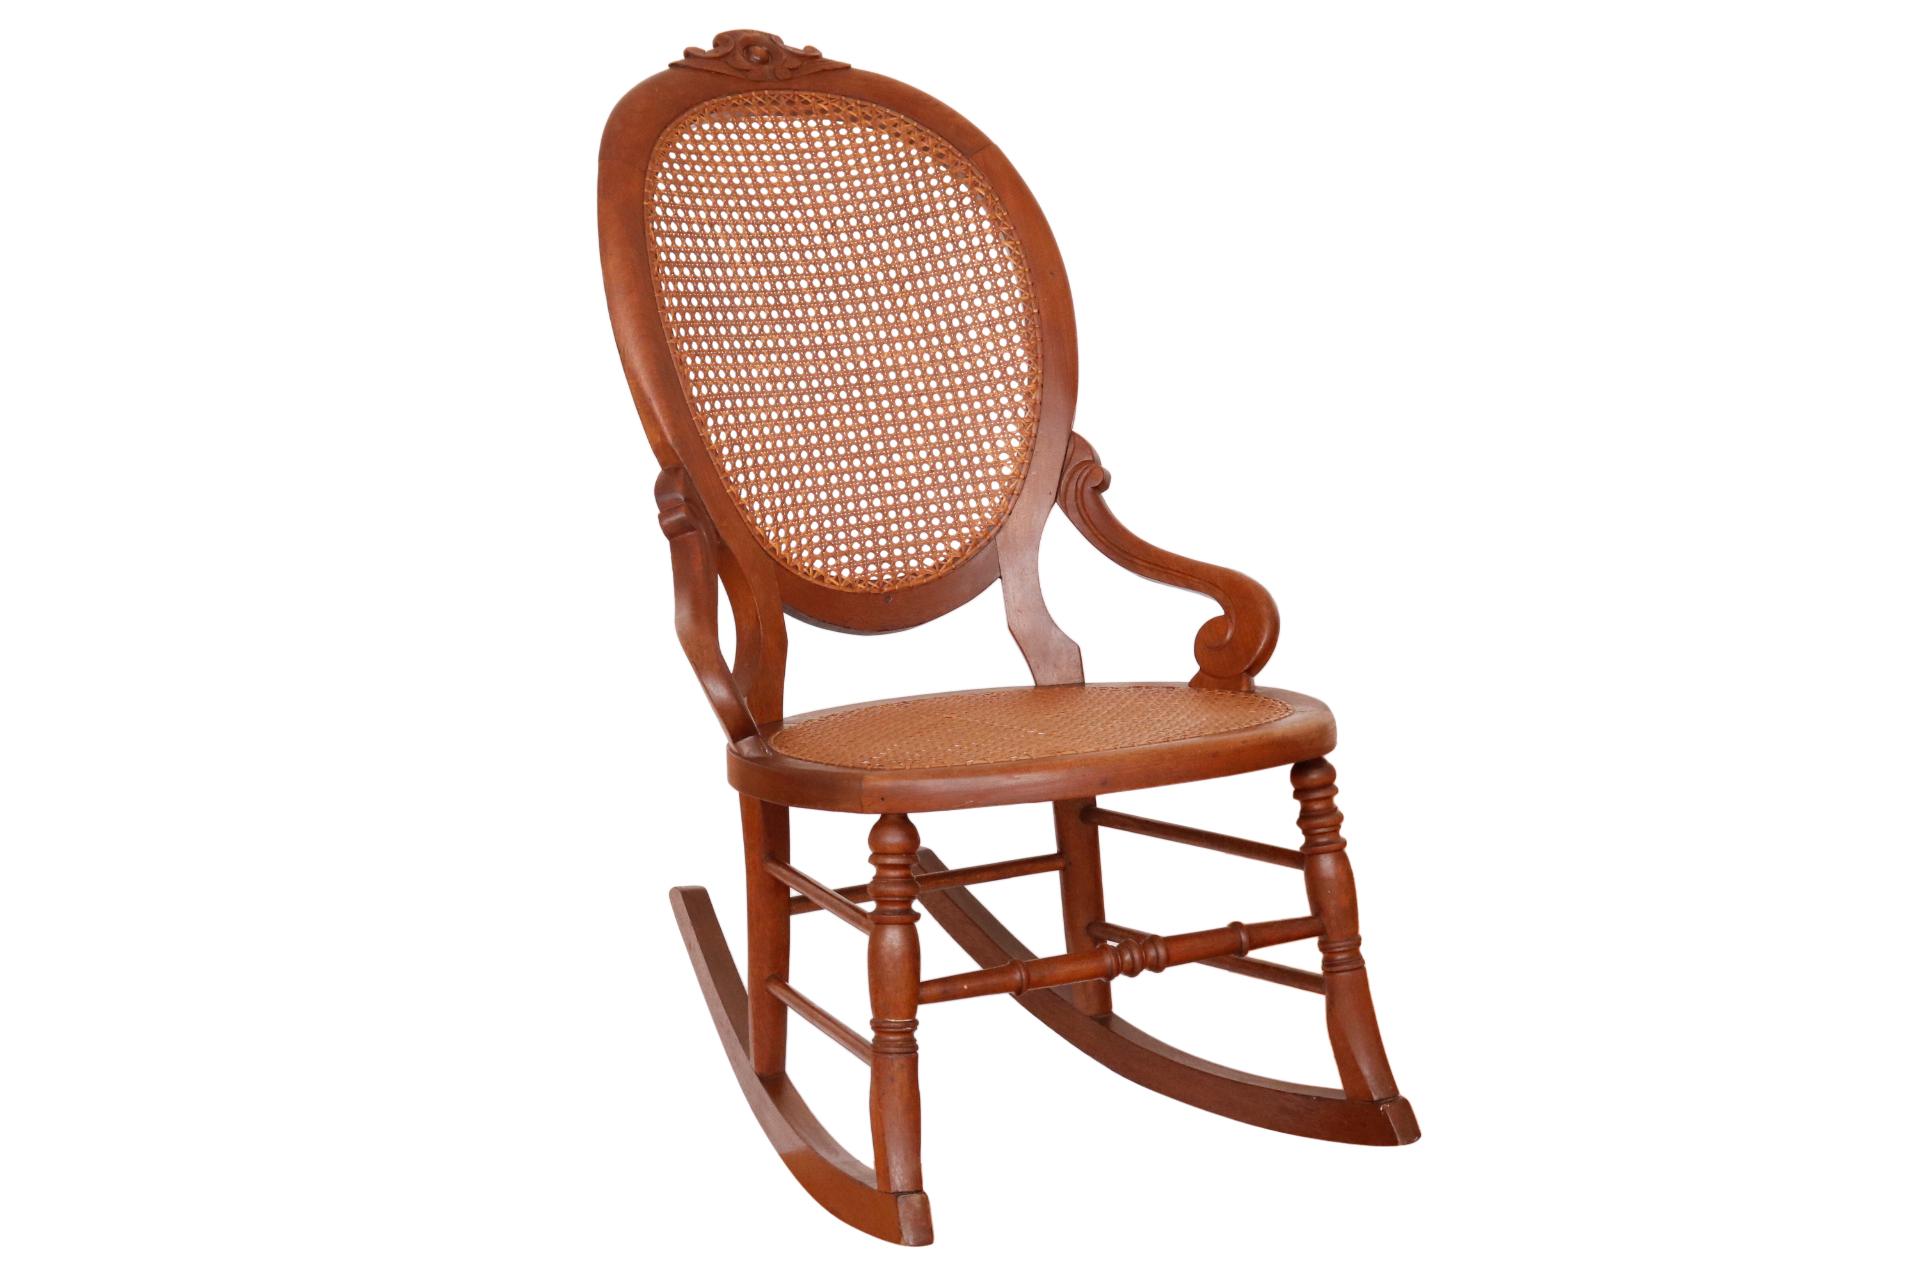 Ein antiker Schaukelstuhl mit Schilfrohr. Der Stuhl hat eine geschnitzte Ballonlehne mit einer einfachen Blume auf dem Kamm. Nach außen fließende Armlehnen wie Stützen rollen am Sitz. Die gedrechselten Beine sind mit einer Kastenstreckung verbunden